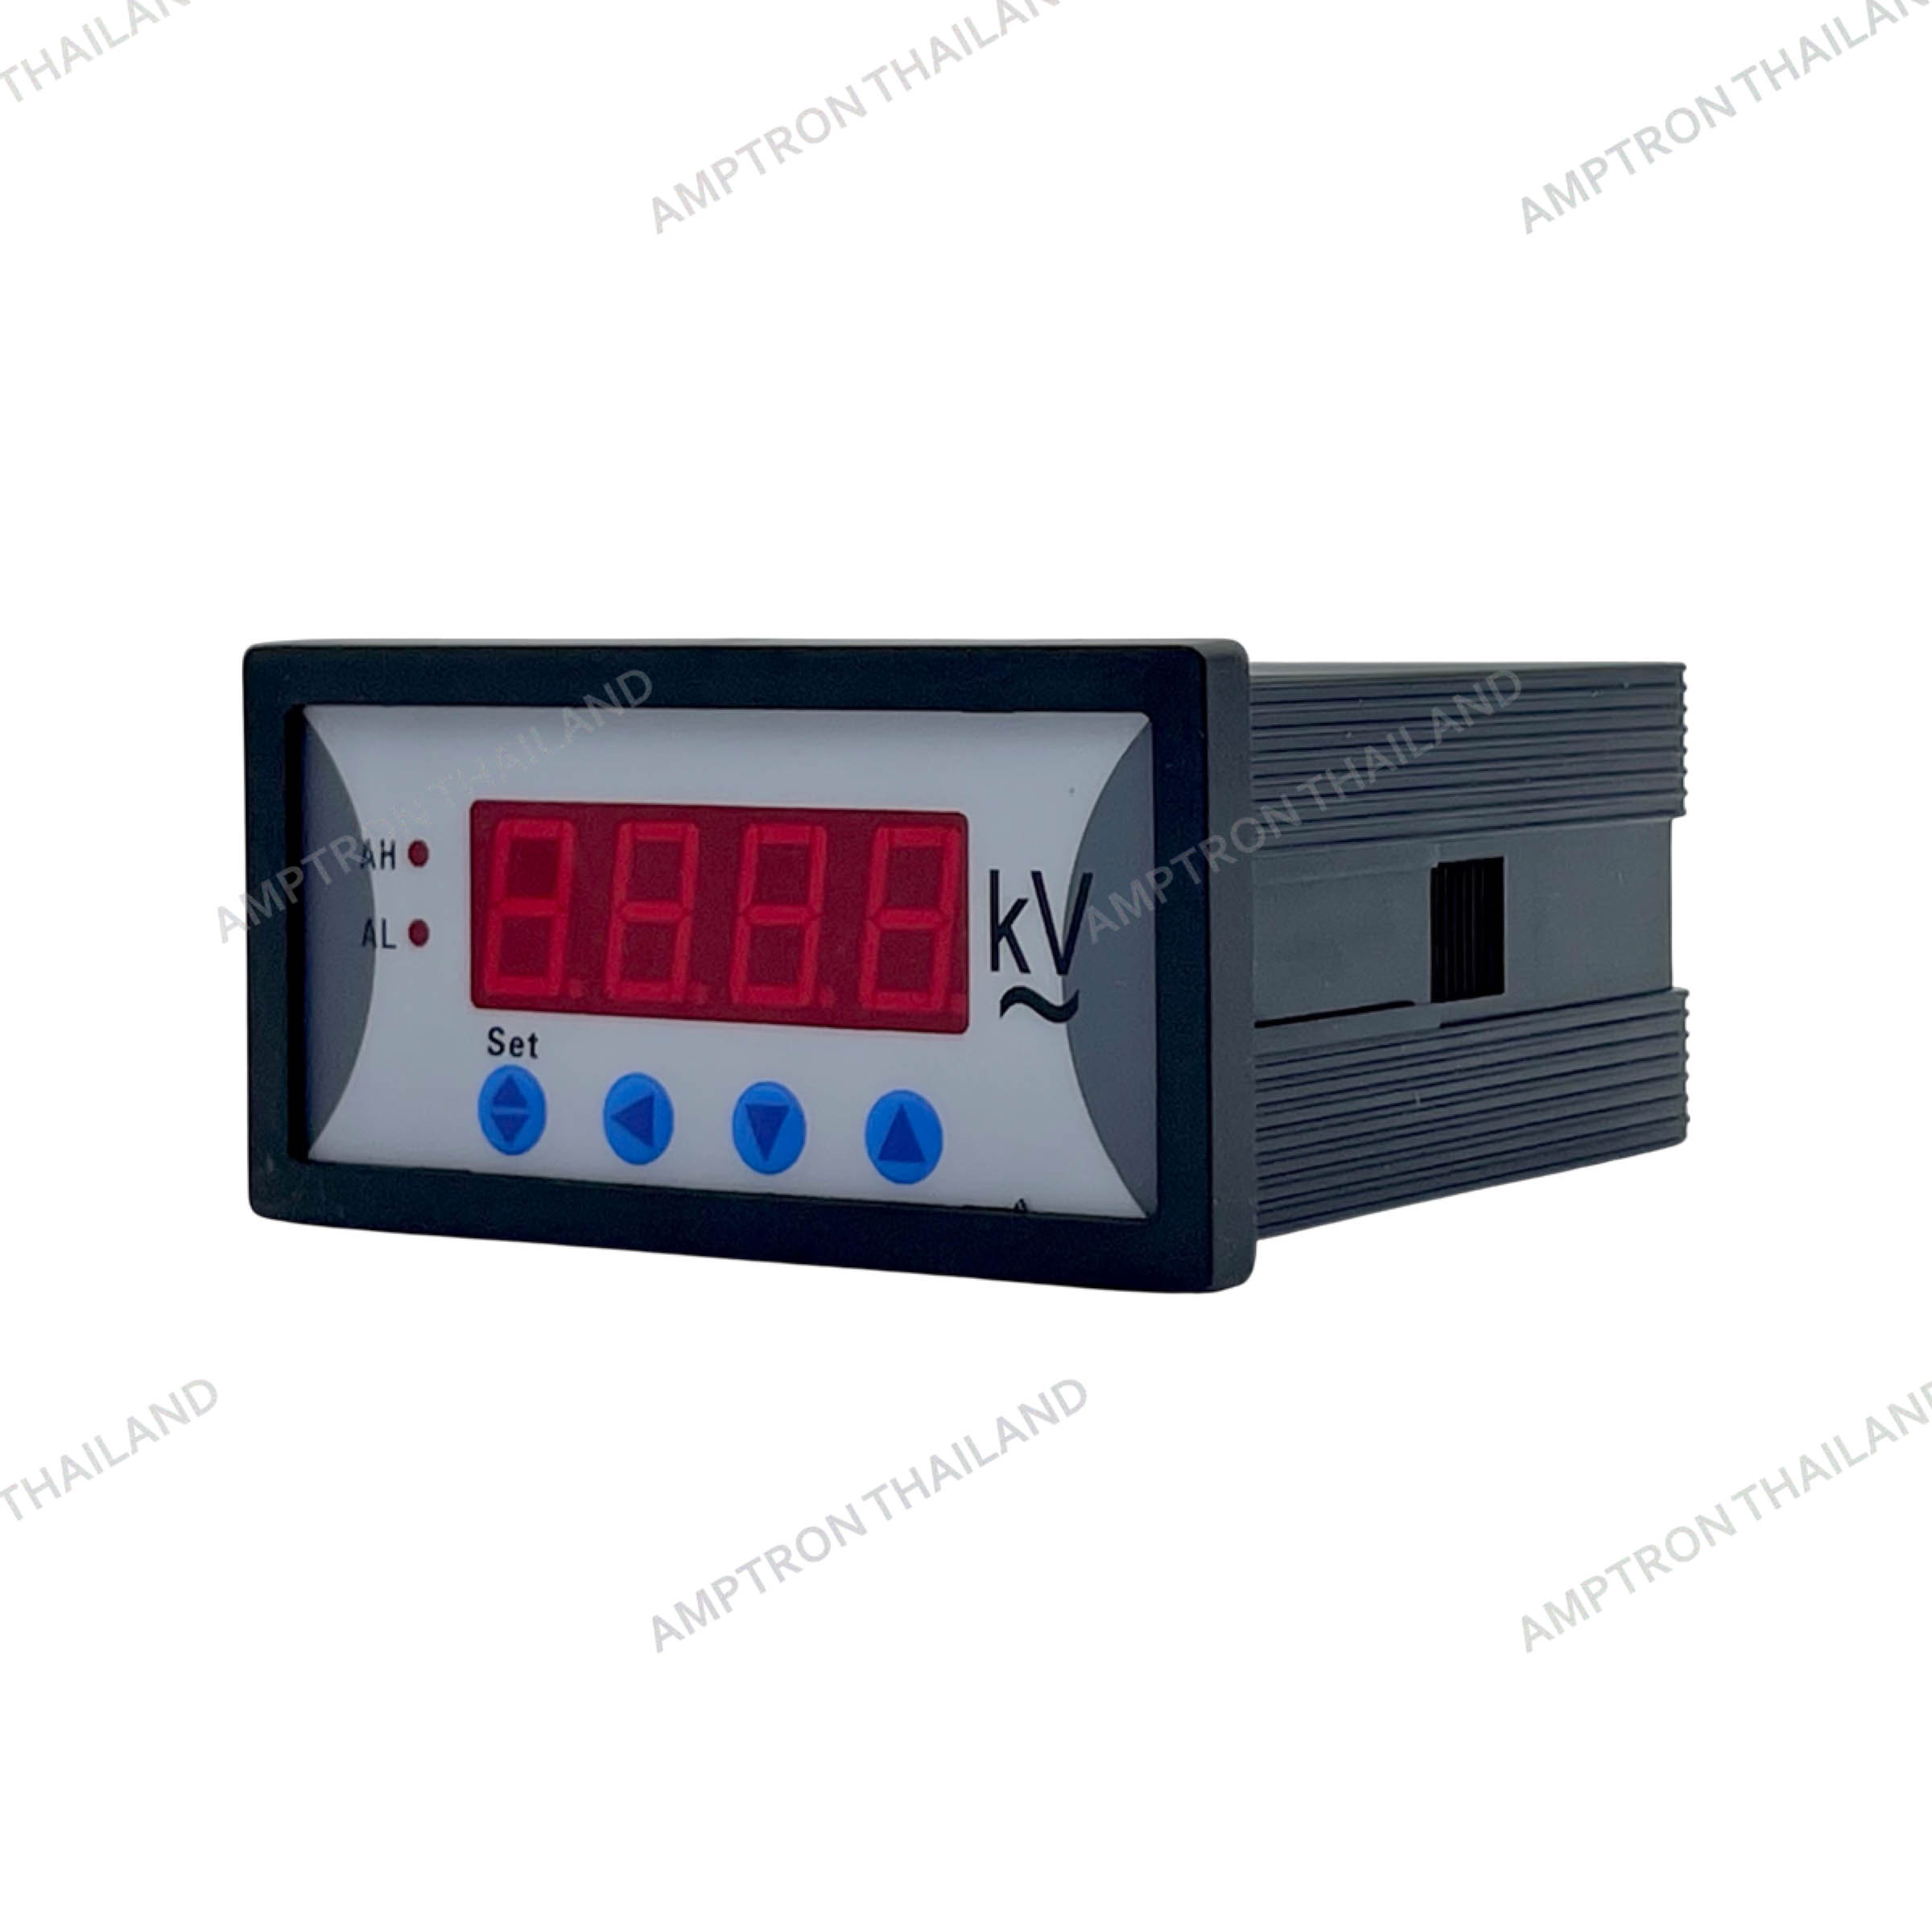 DP Series Programmable Digital Meter